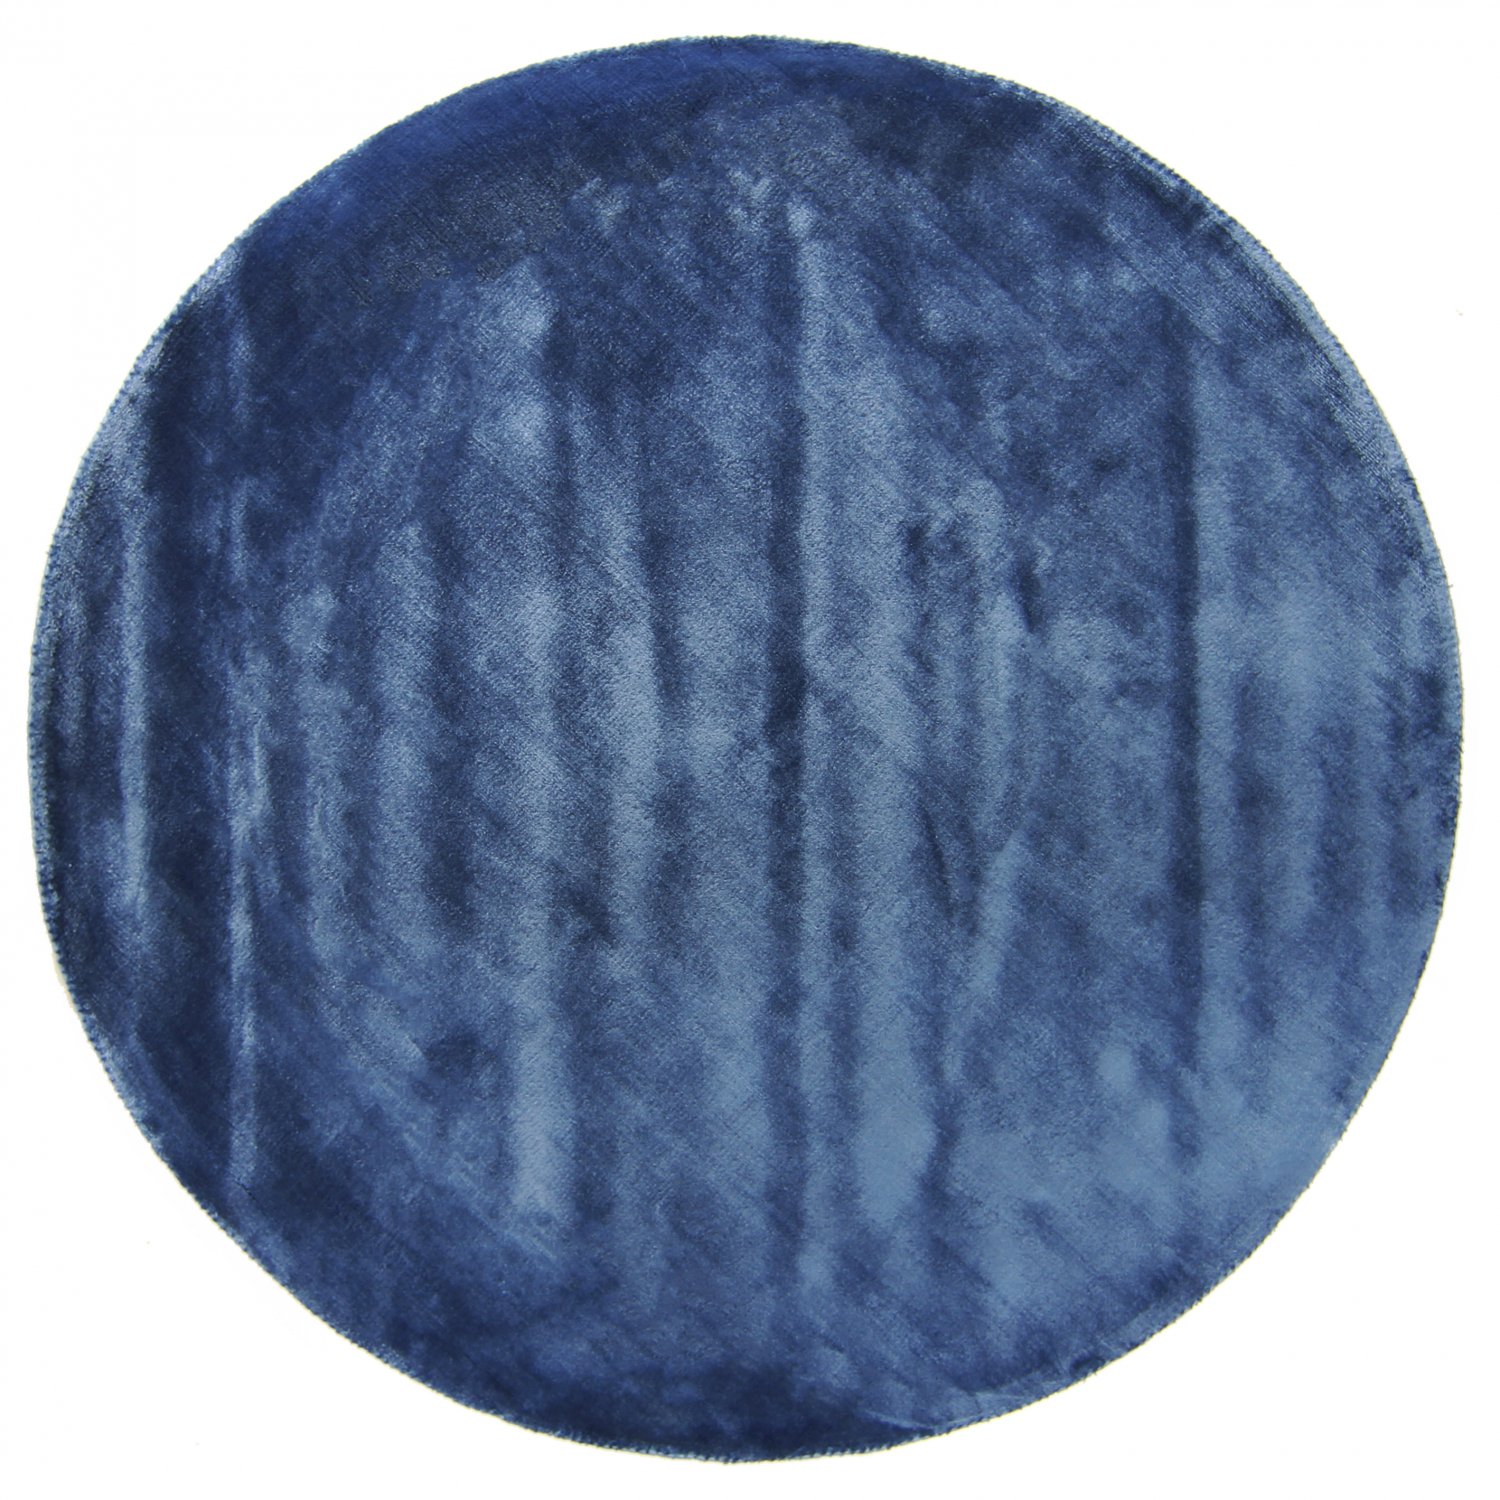 Pyöreä matto - Jodhpur Special Luxury Edition Viskoosi (sininen)